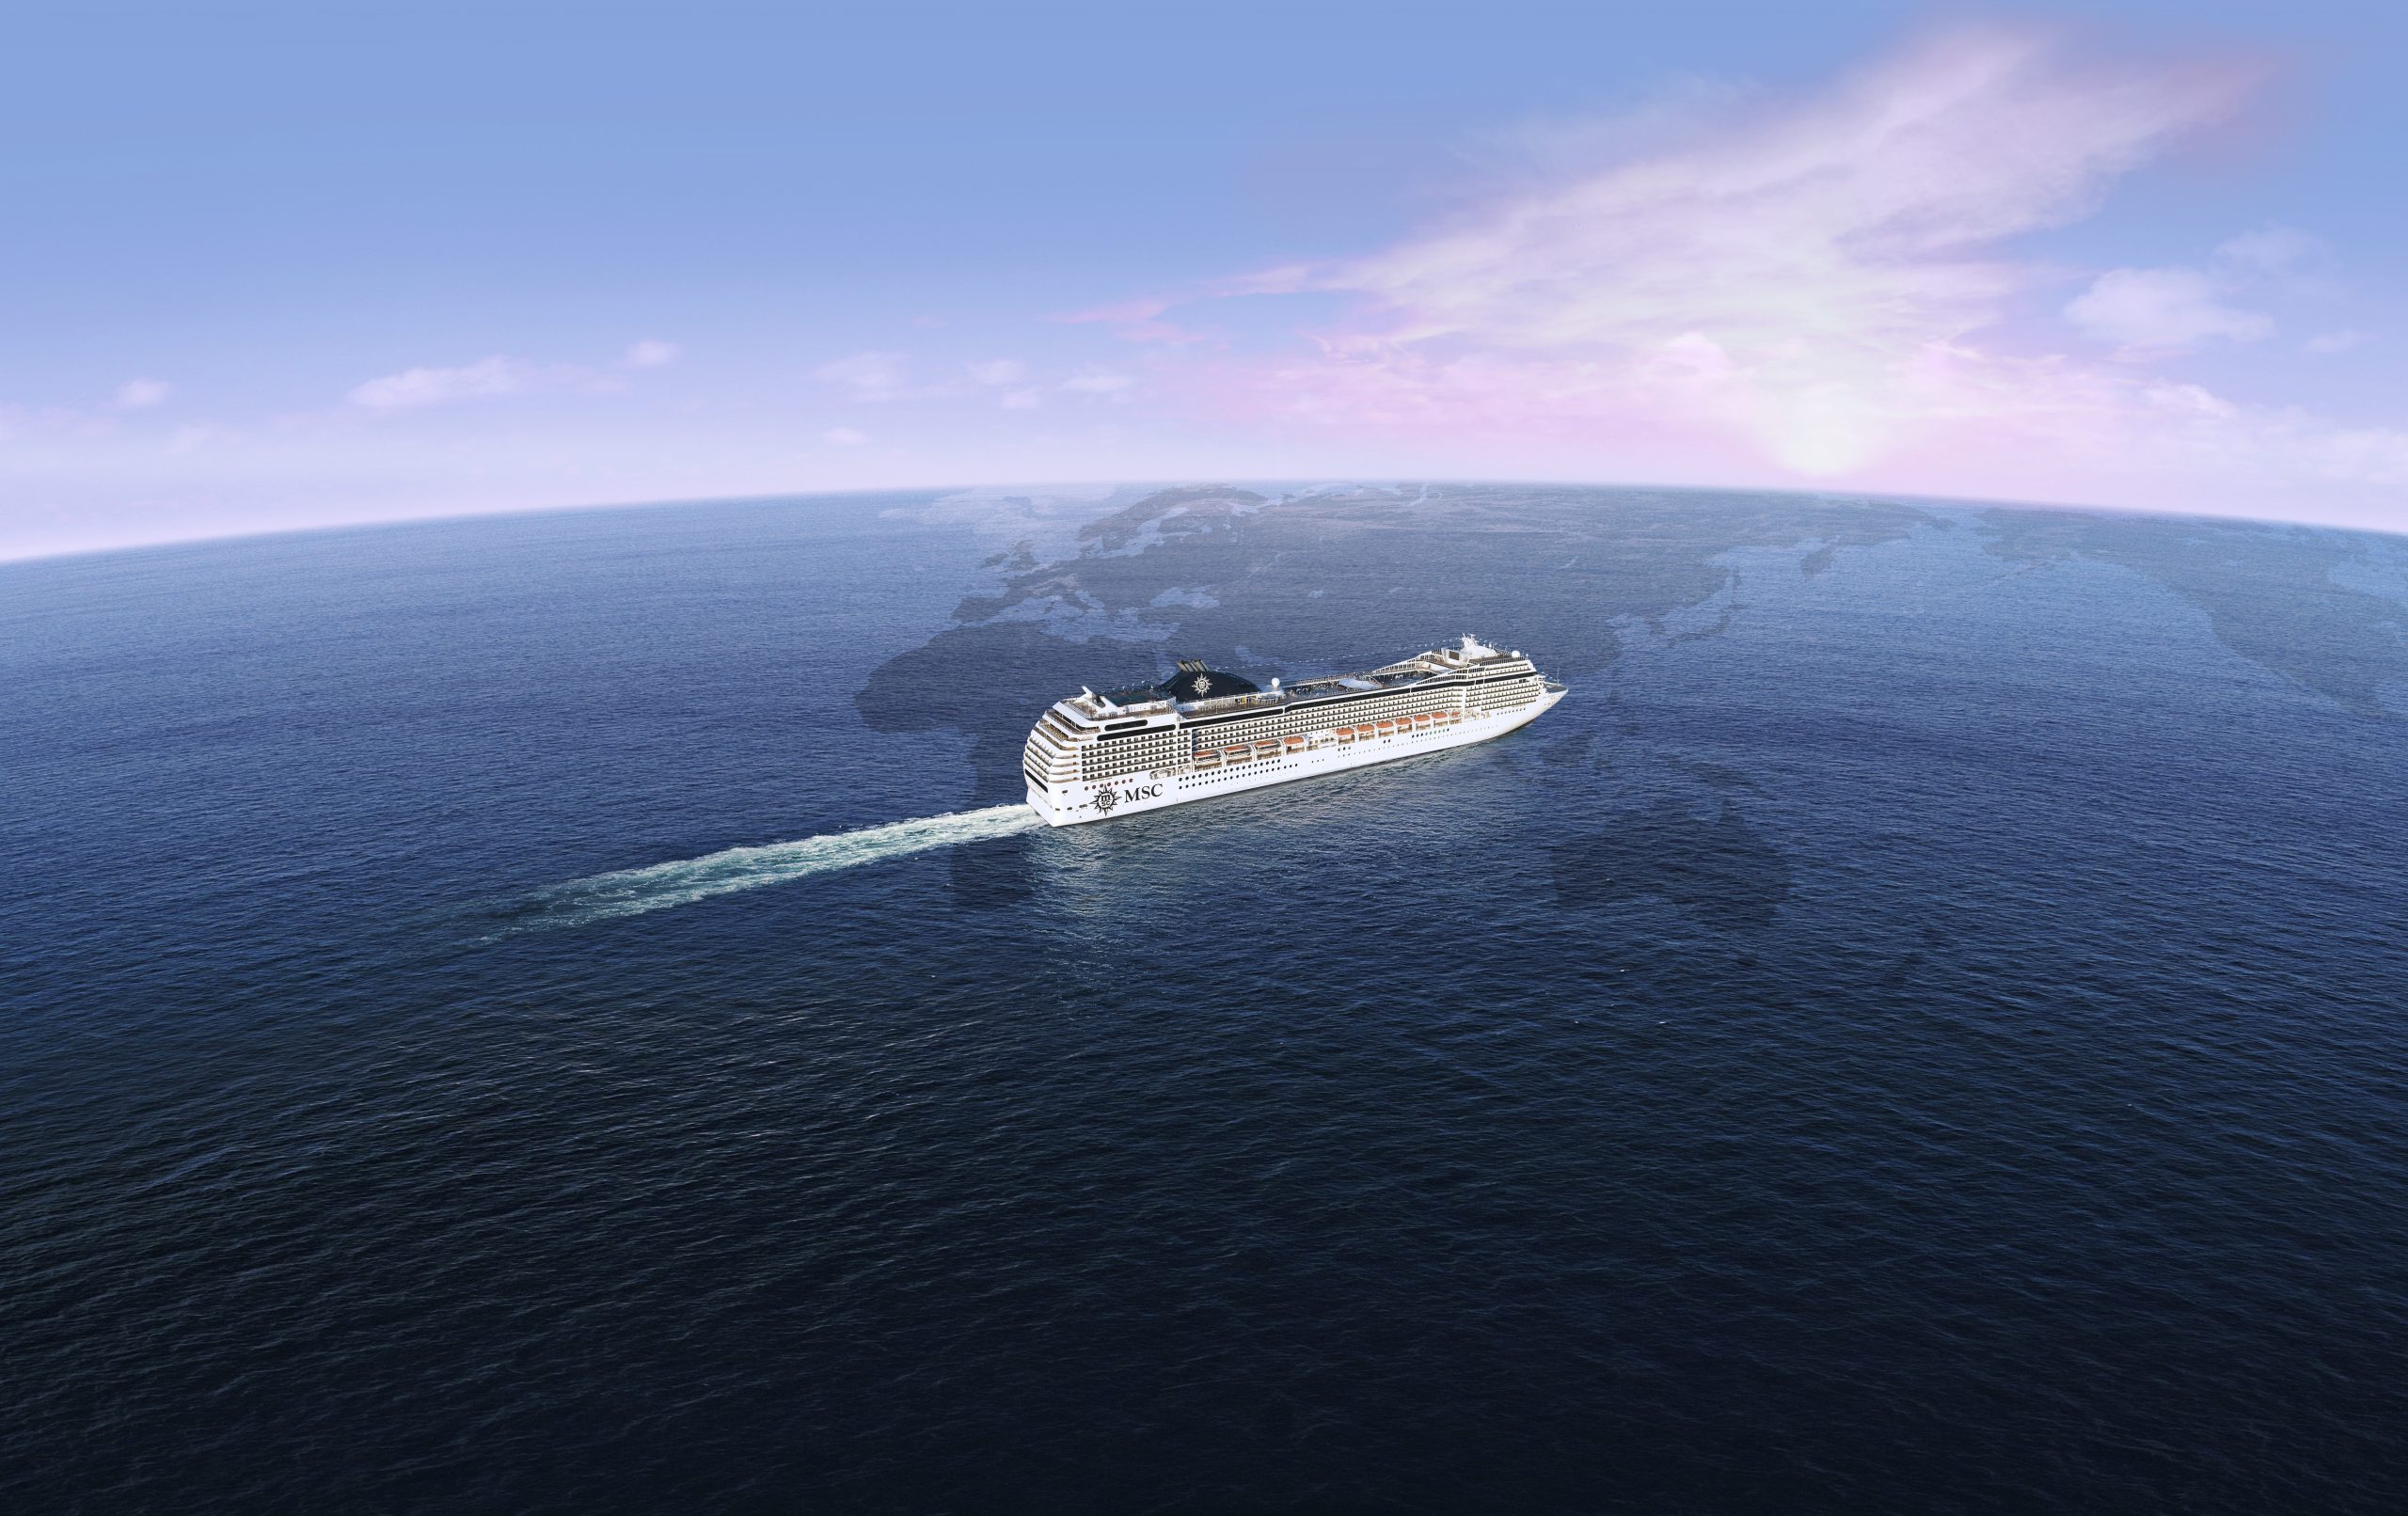 Jorda rundt med cruiseskip - en artikkel av Roar Verdenscruise med MSC Poesia 2021, nordmannsreiser, cruisereiser, cruise